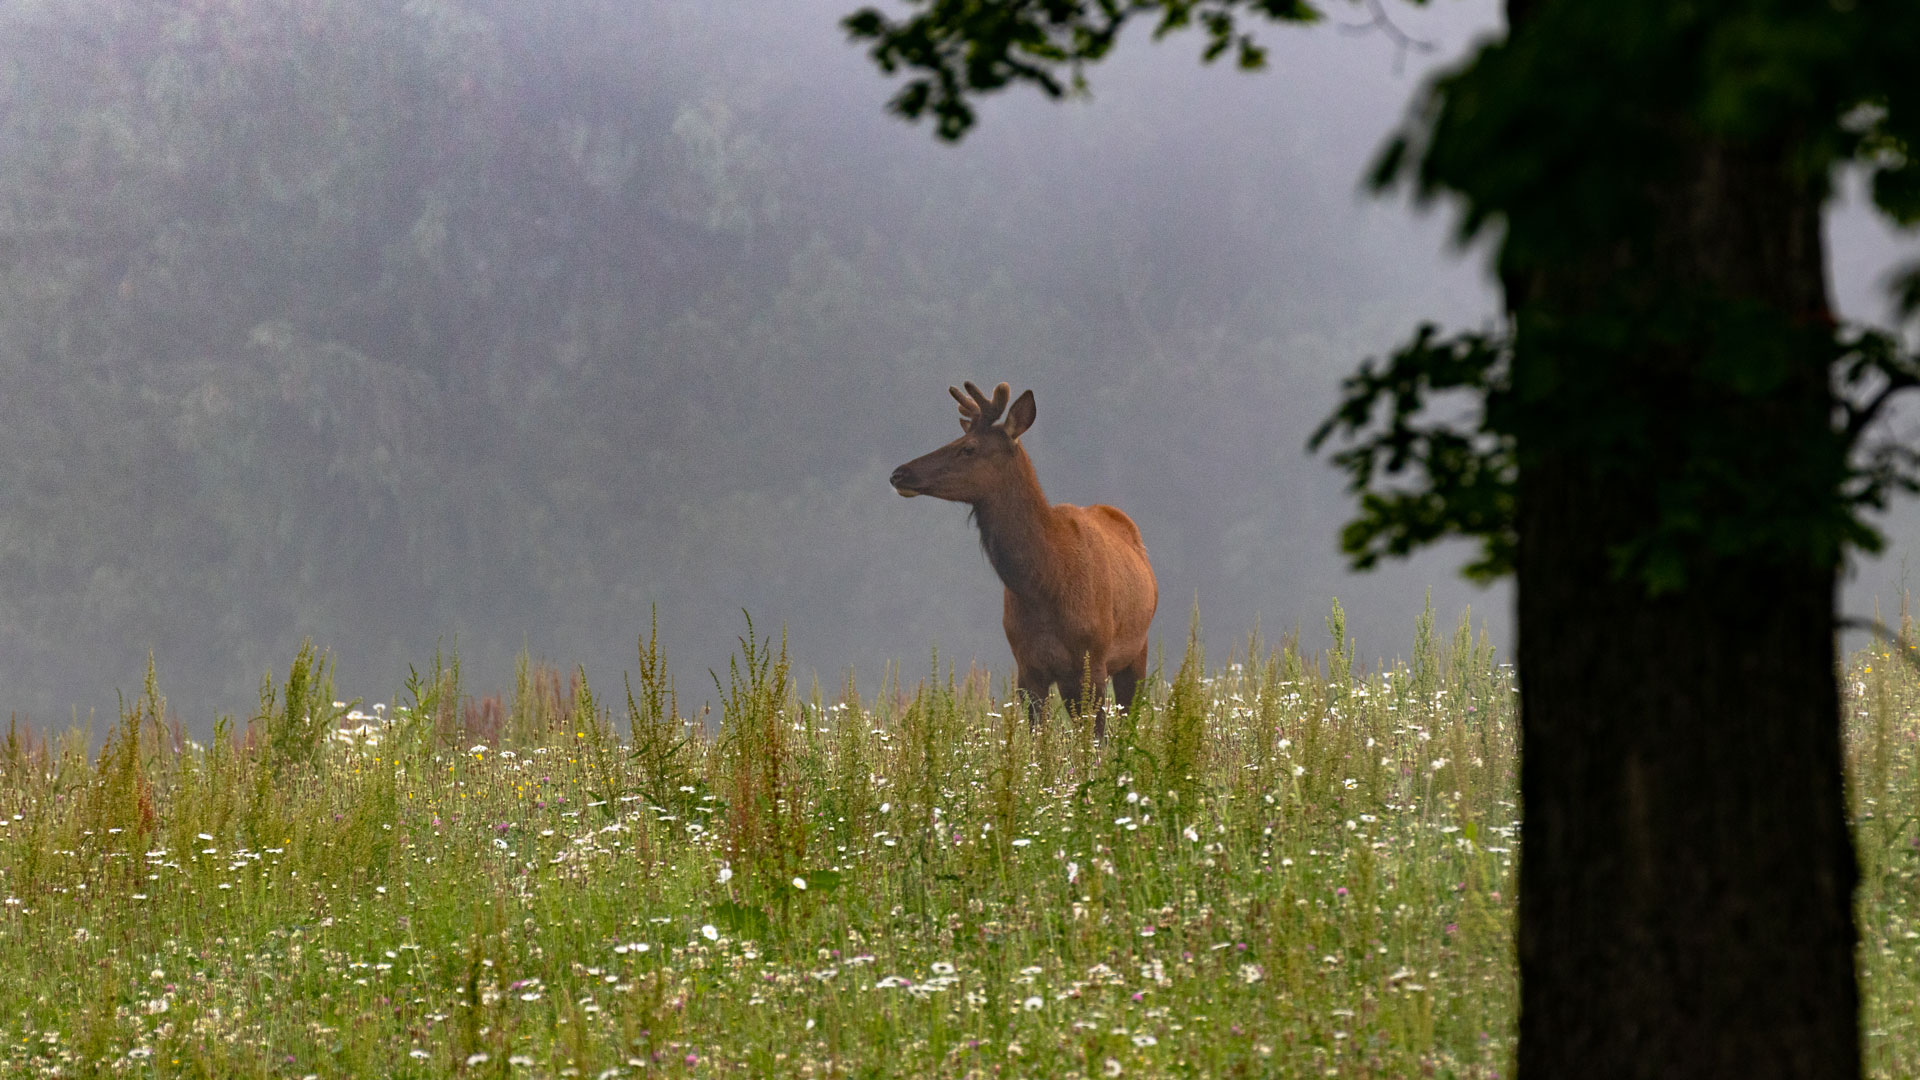 elk in a grassy field